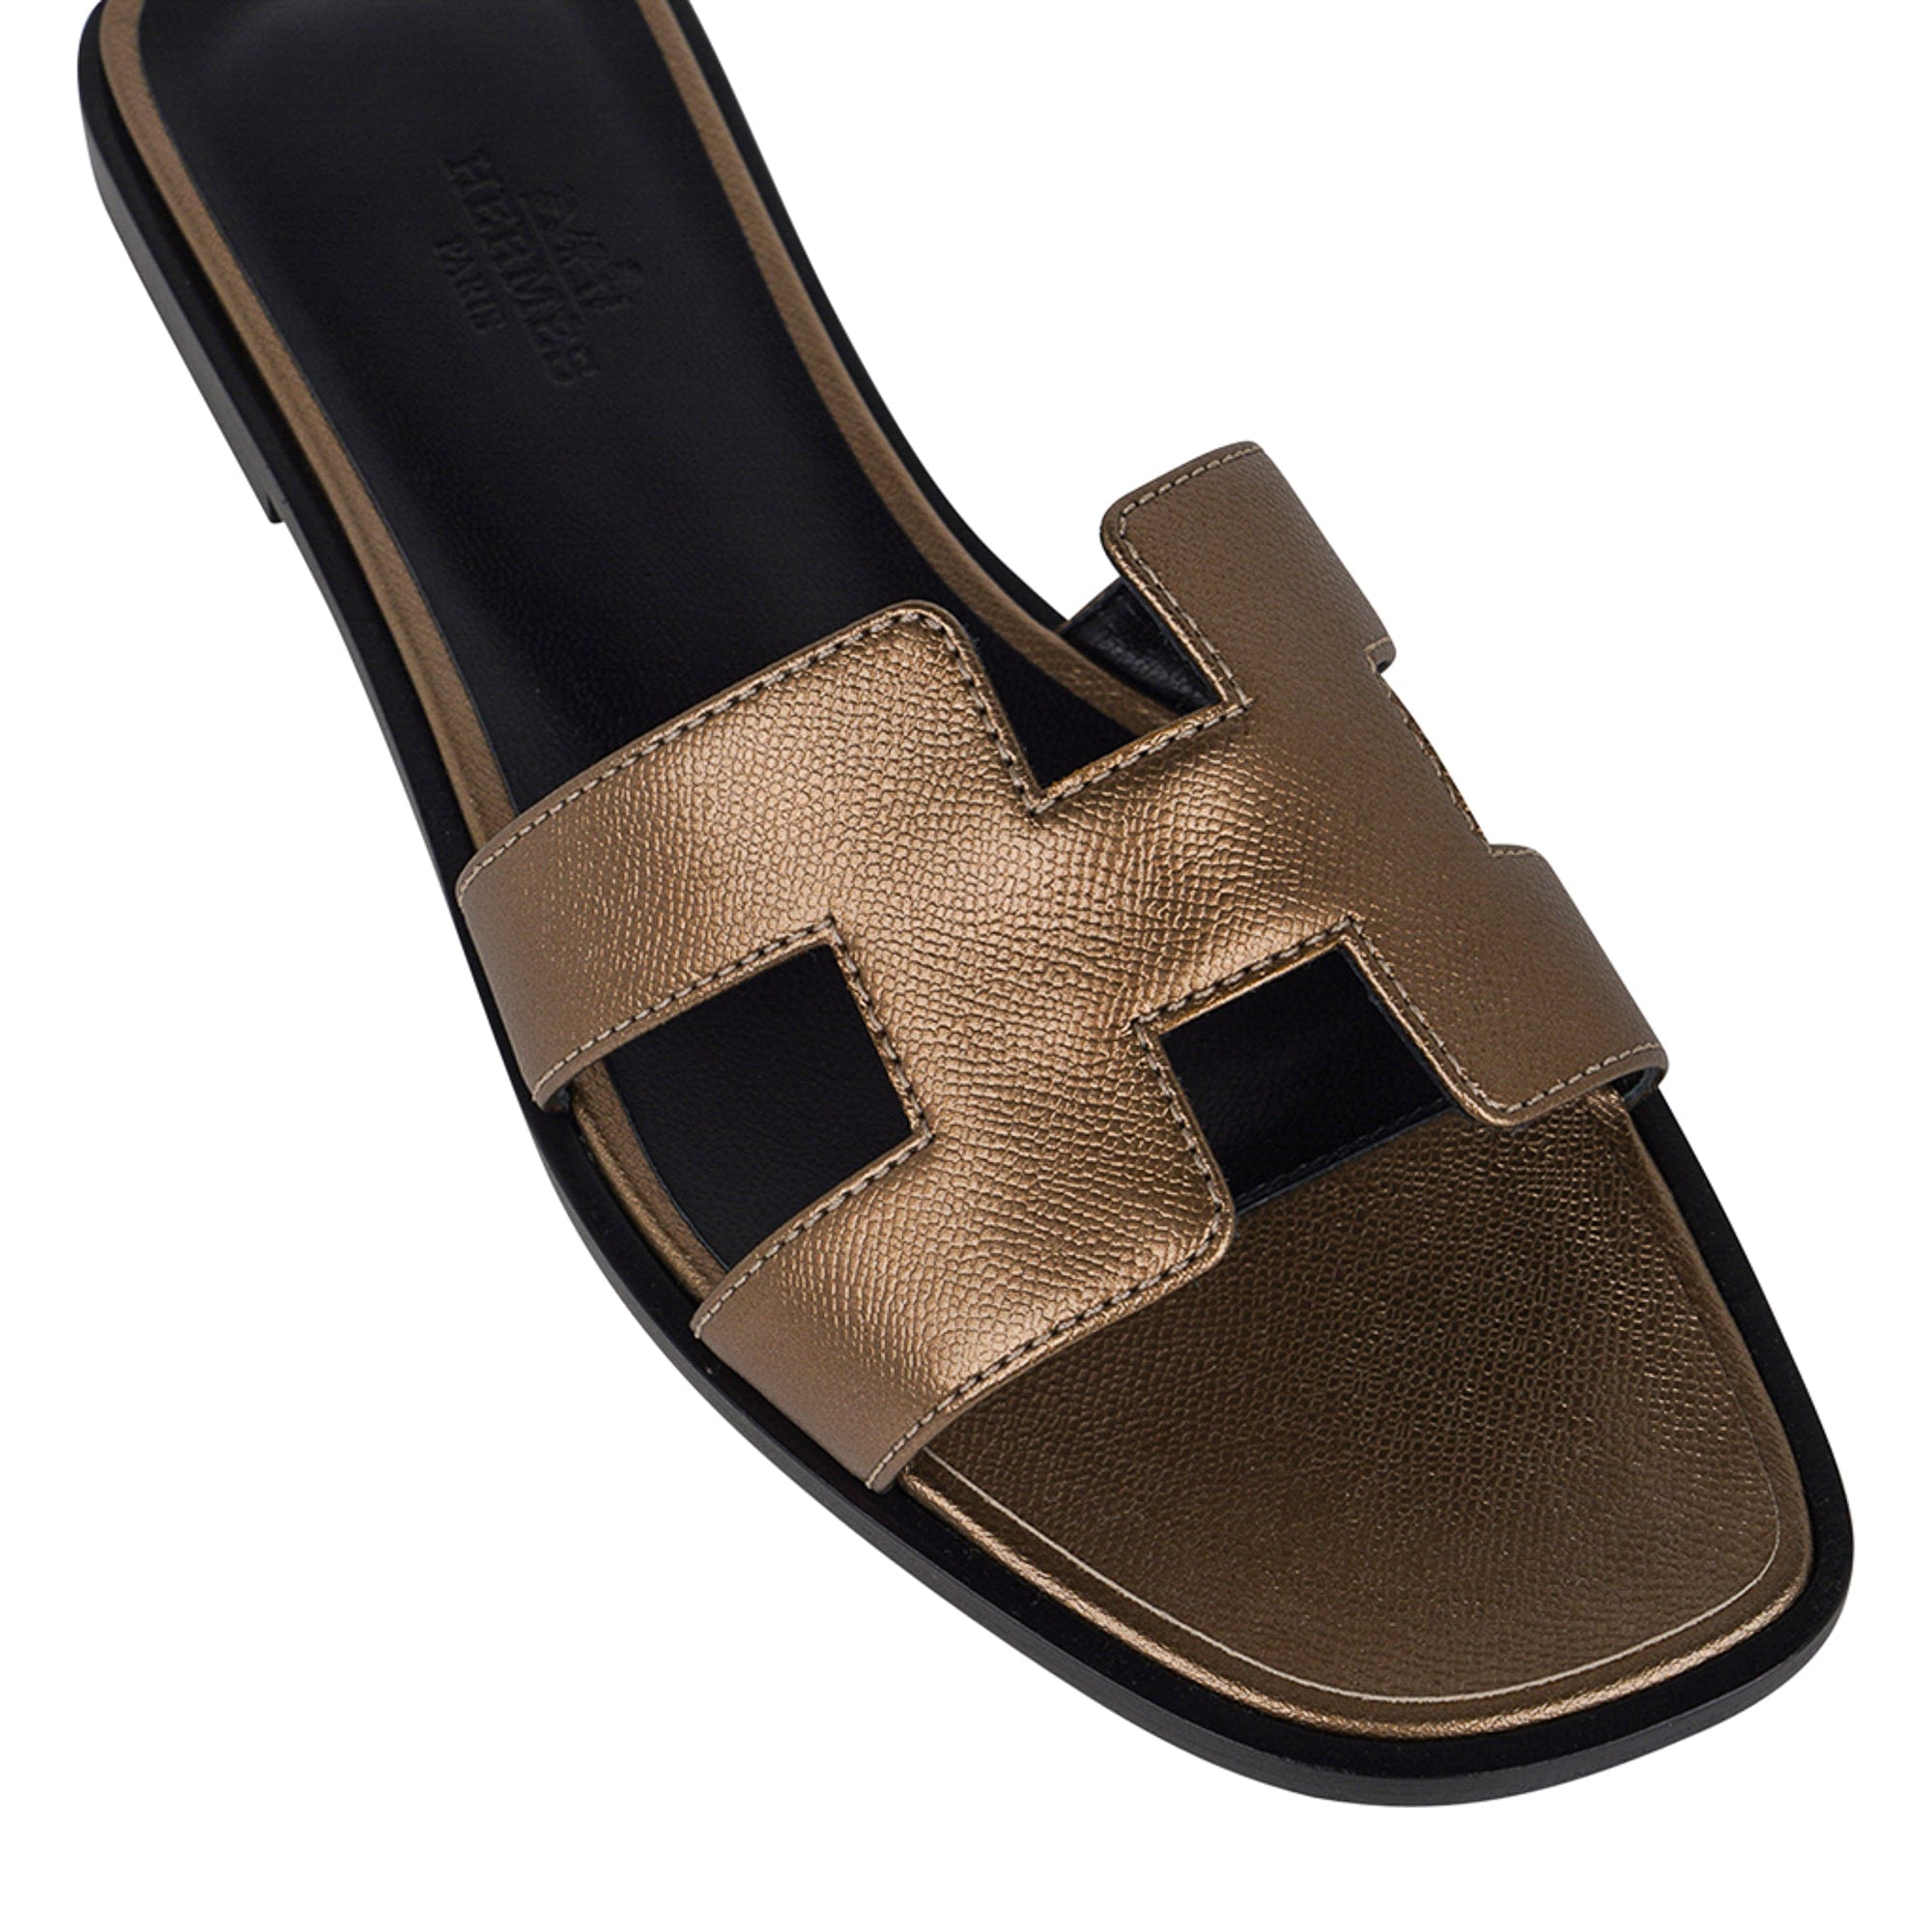 LOUIS VUITTON Leather slide buckle Gold details Flat Women's Sandals SZ 37